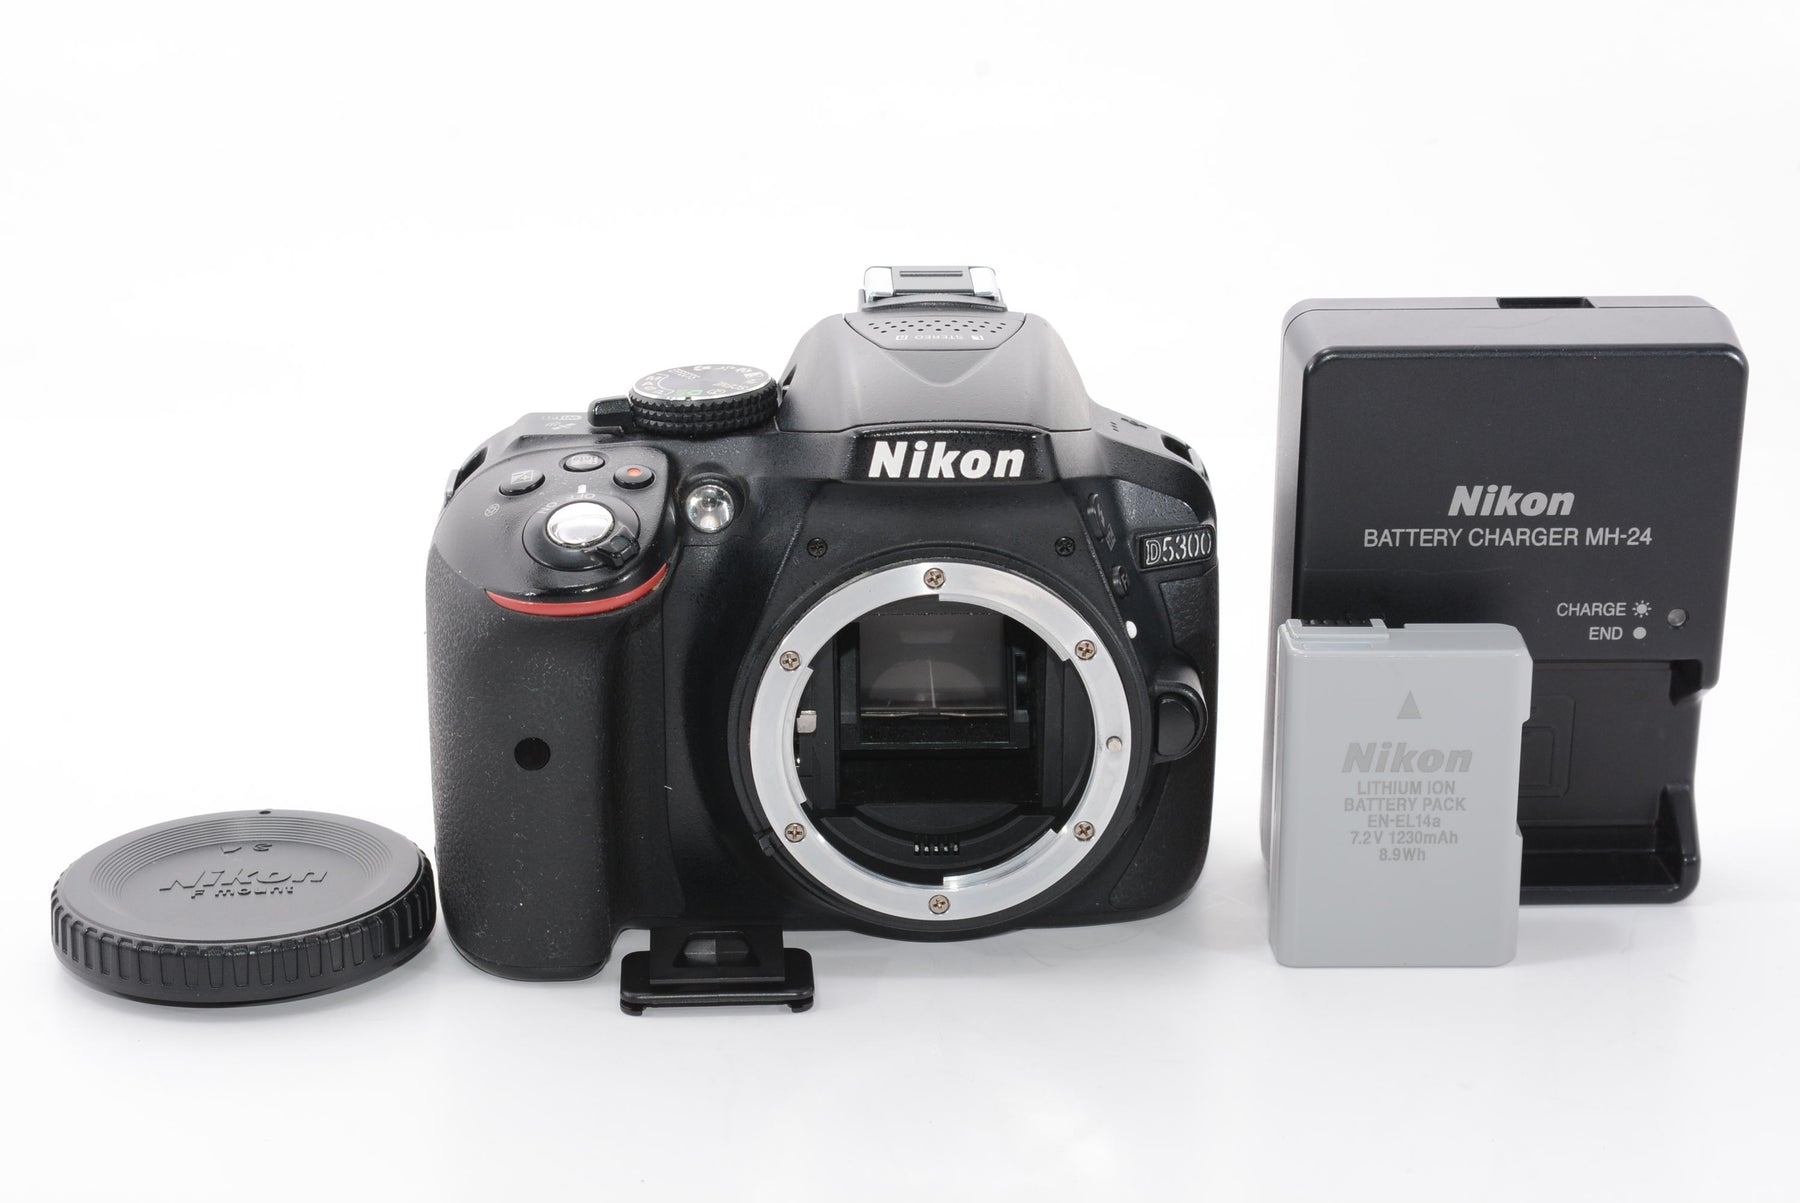 【外観並級】Nikon デジタル一眼レフカメラ D5300 ブラック 2400万画素 3.2型液晶 D5300BK